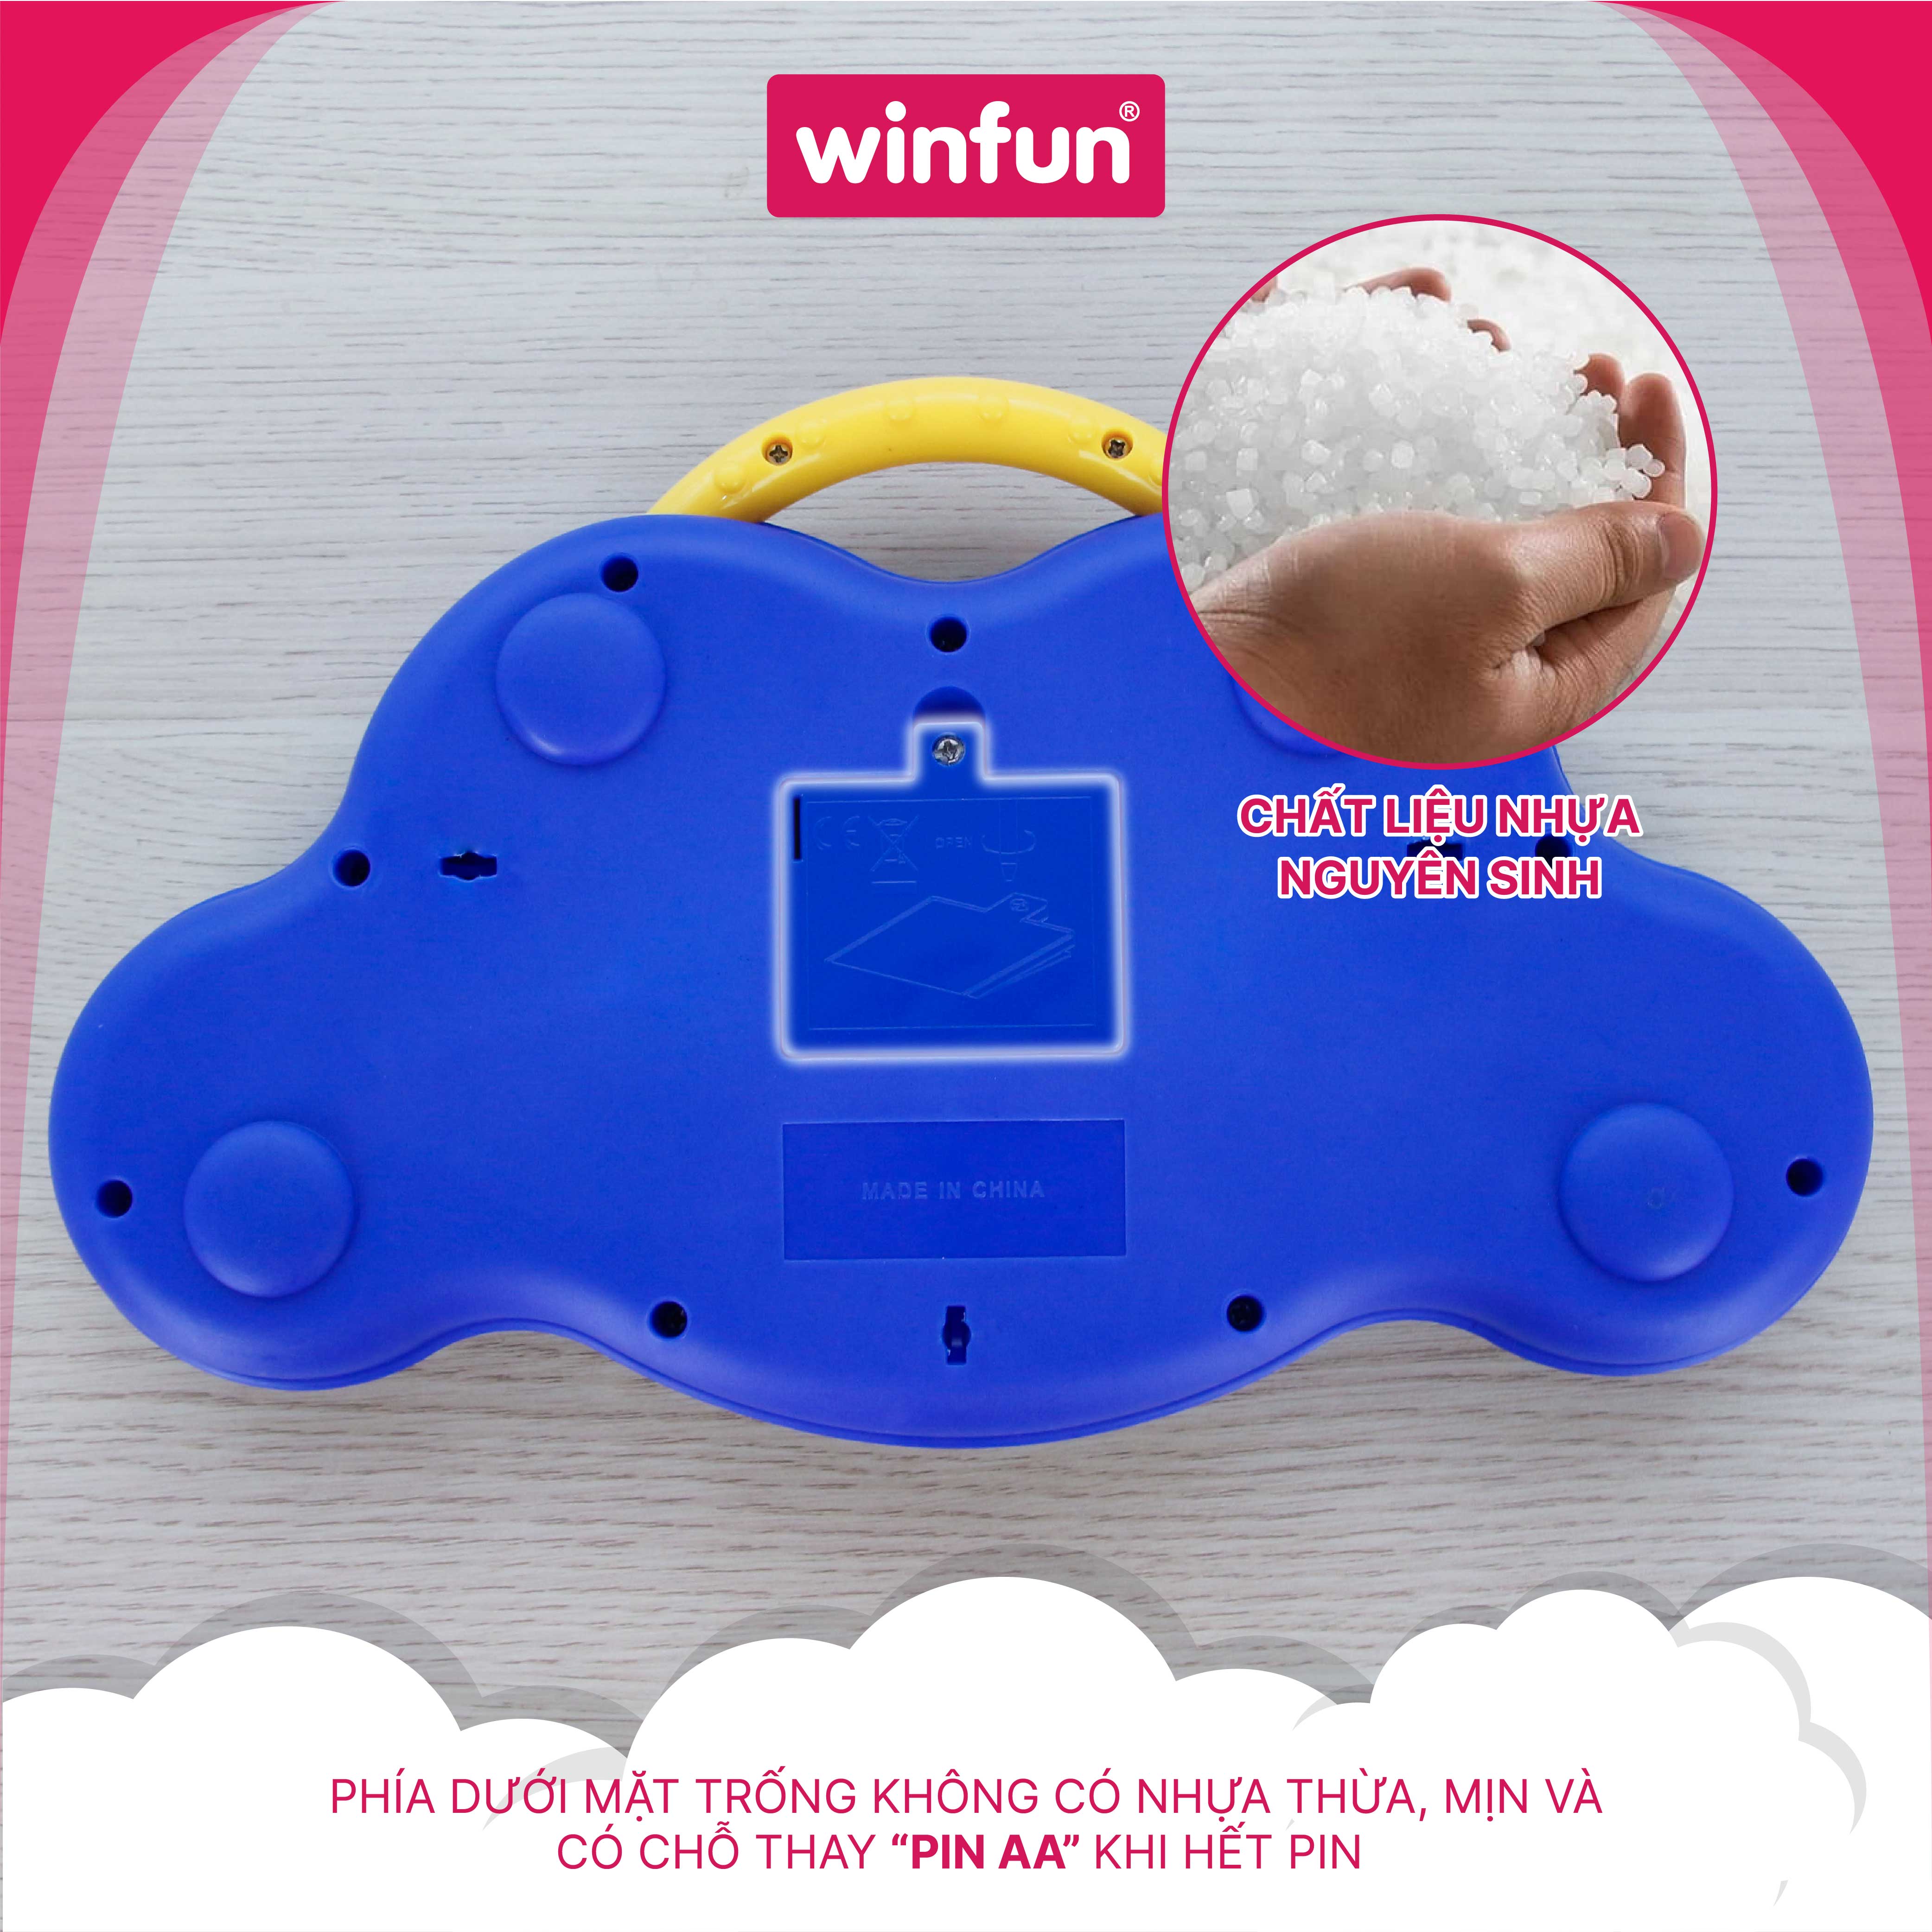 Trống đồ chơi cho bé phát nhạc vui nhộn, âm thanh động vật kích thích giác quan, bé luyện phối hợp tay mắt Winfun 2010-NL